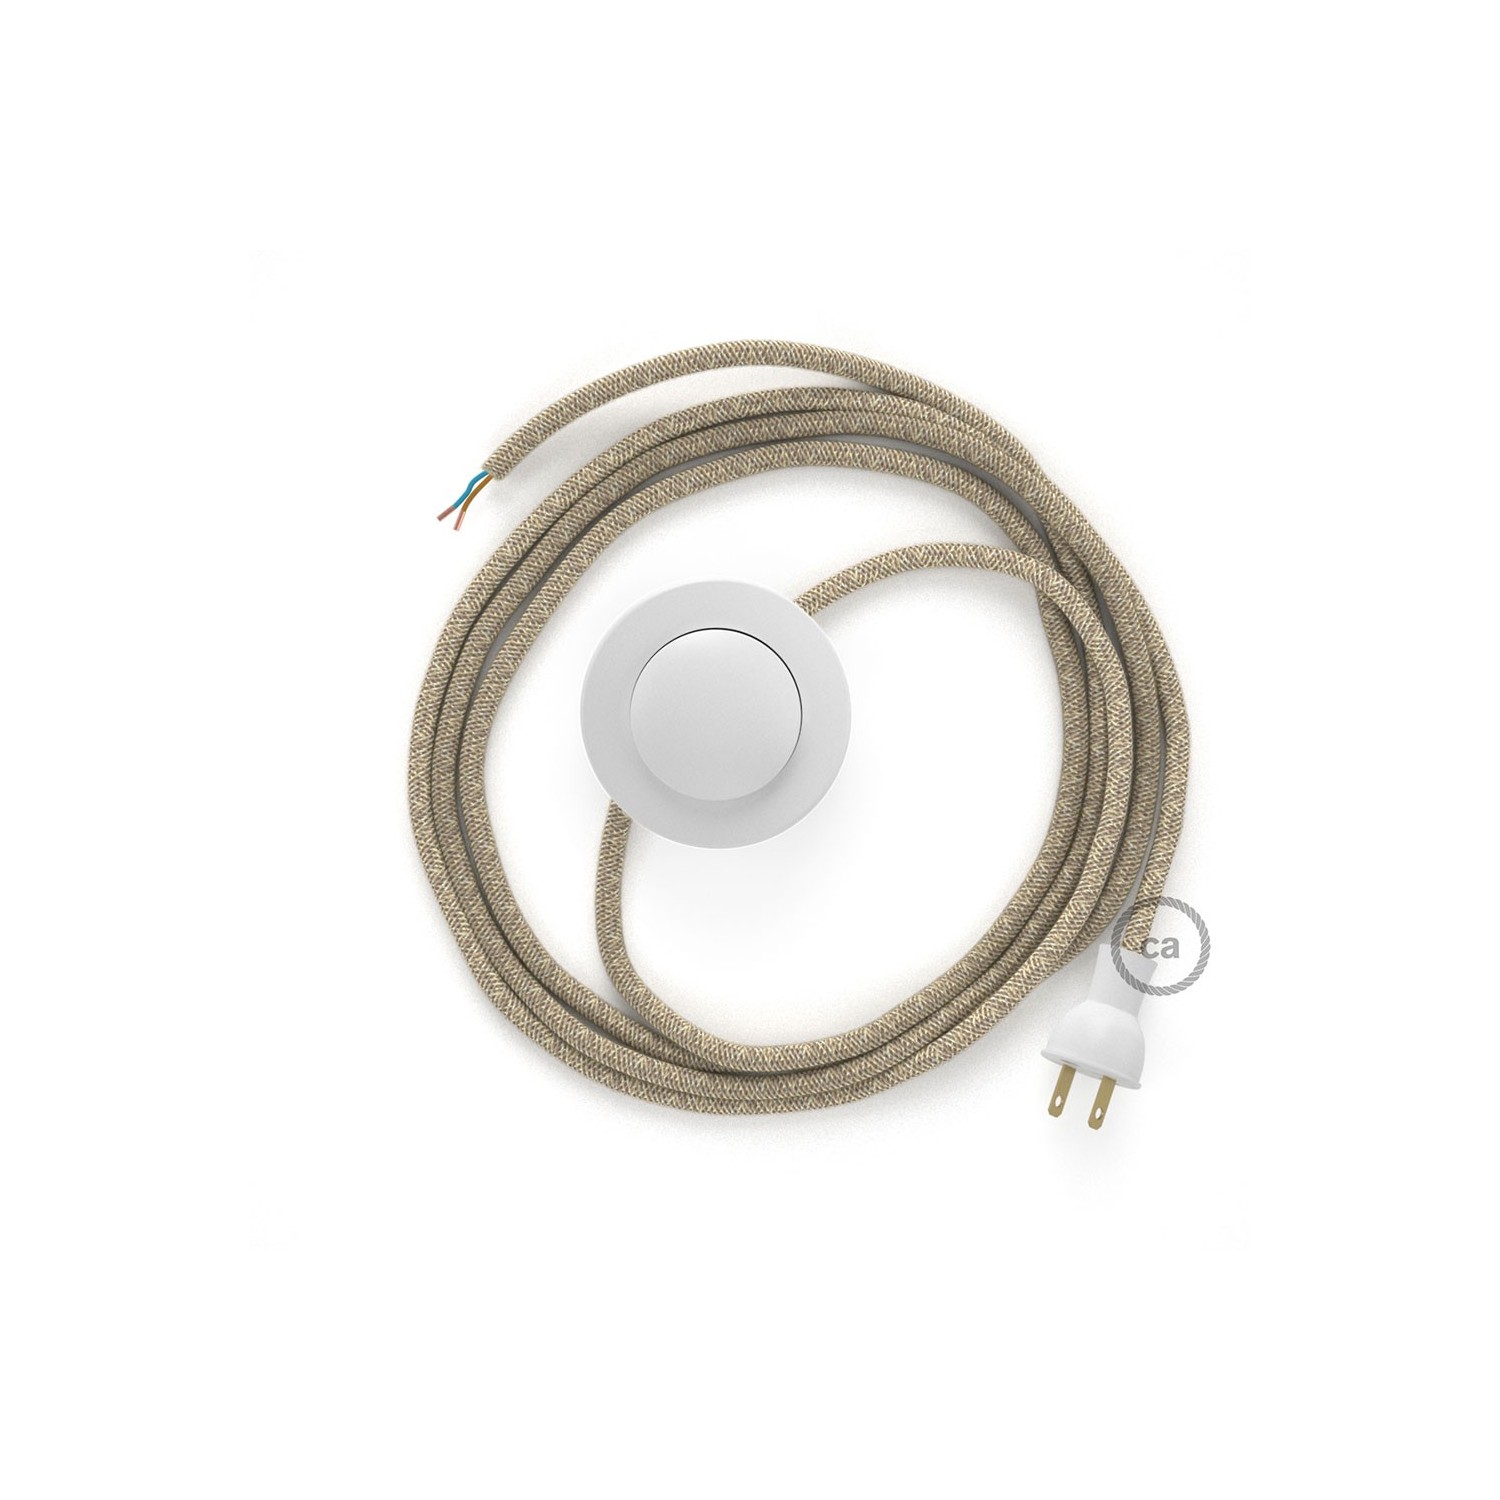 Cableado para lámpara de piso, cable RN01 Lino Natural Neutro 3 m. Elige tu el color de la clavija y del interruptor!